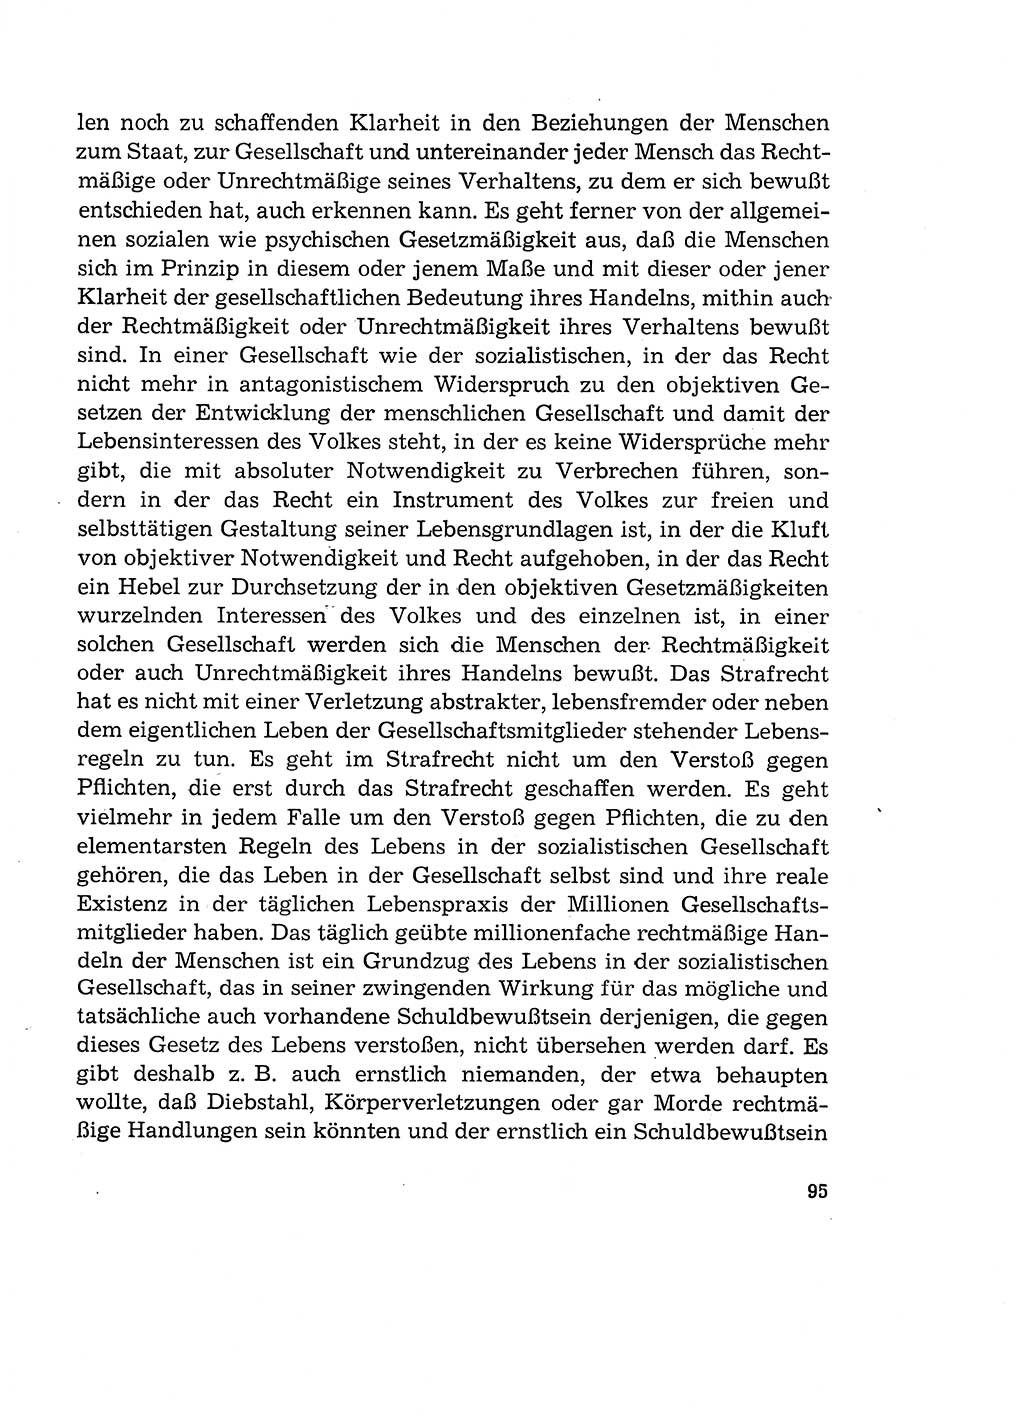 Verantwortung und Schuld im neuen Strafgesetzbuch (StGB) [Deutsche Demokratische Republik (DDR)] 1964, Seite 95 (Verantw. Sch. StGB DDR 1964, S. 95)